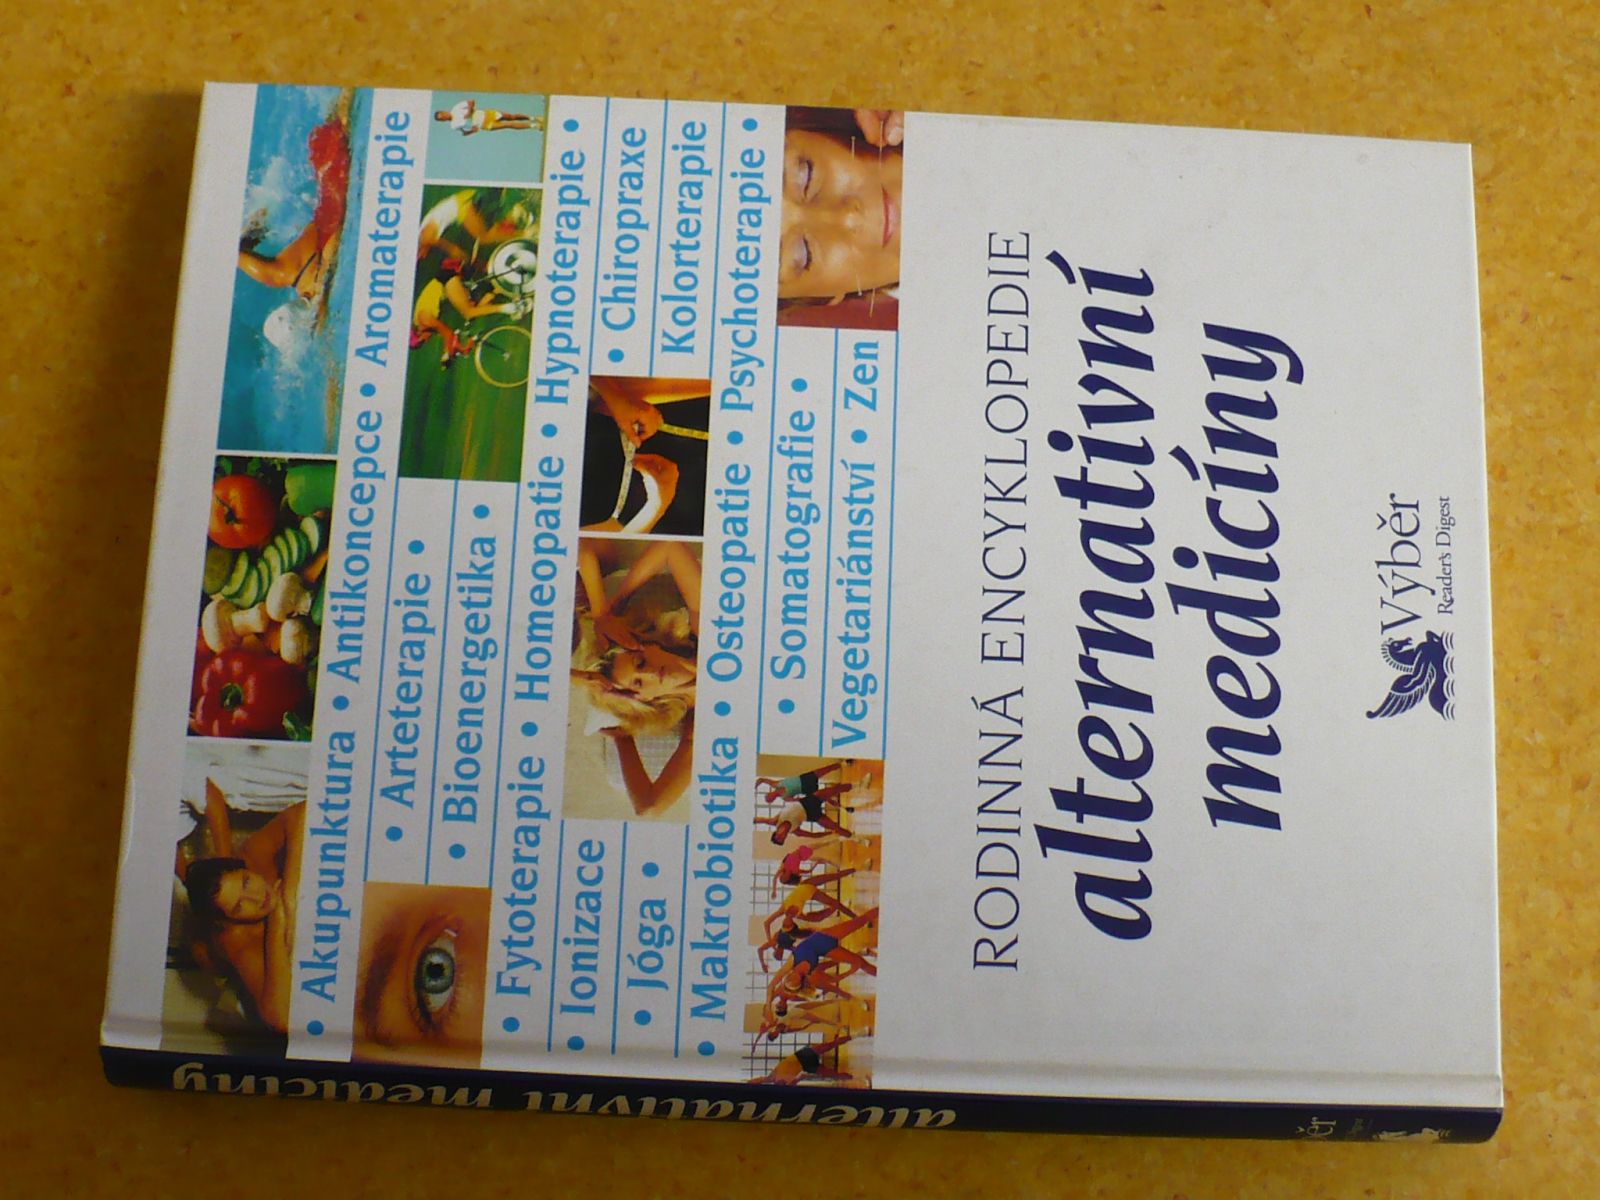 Rodinná encyklopedie alternativní medicíny (1997)